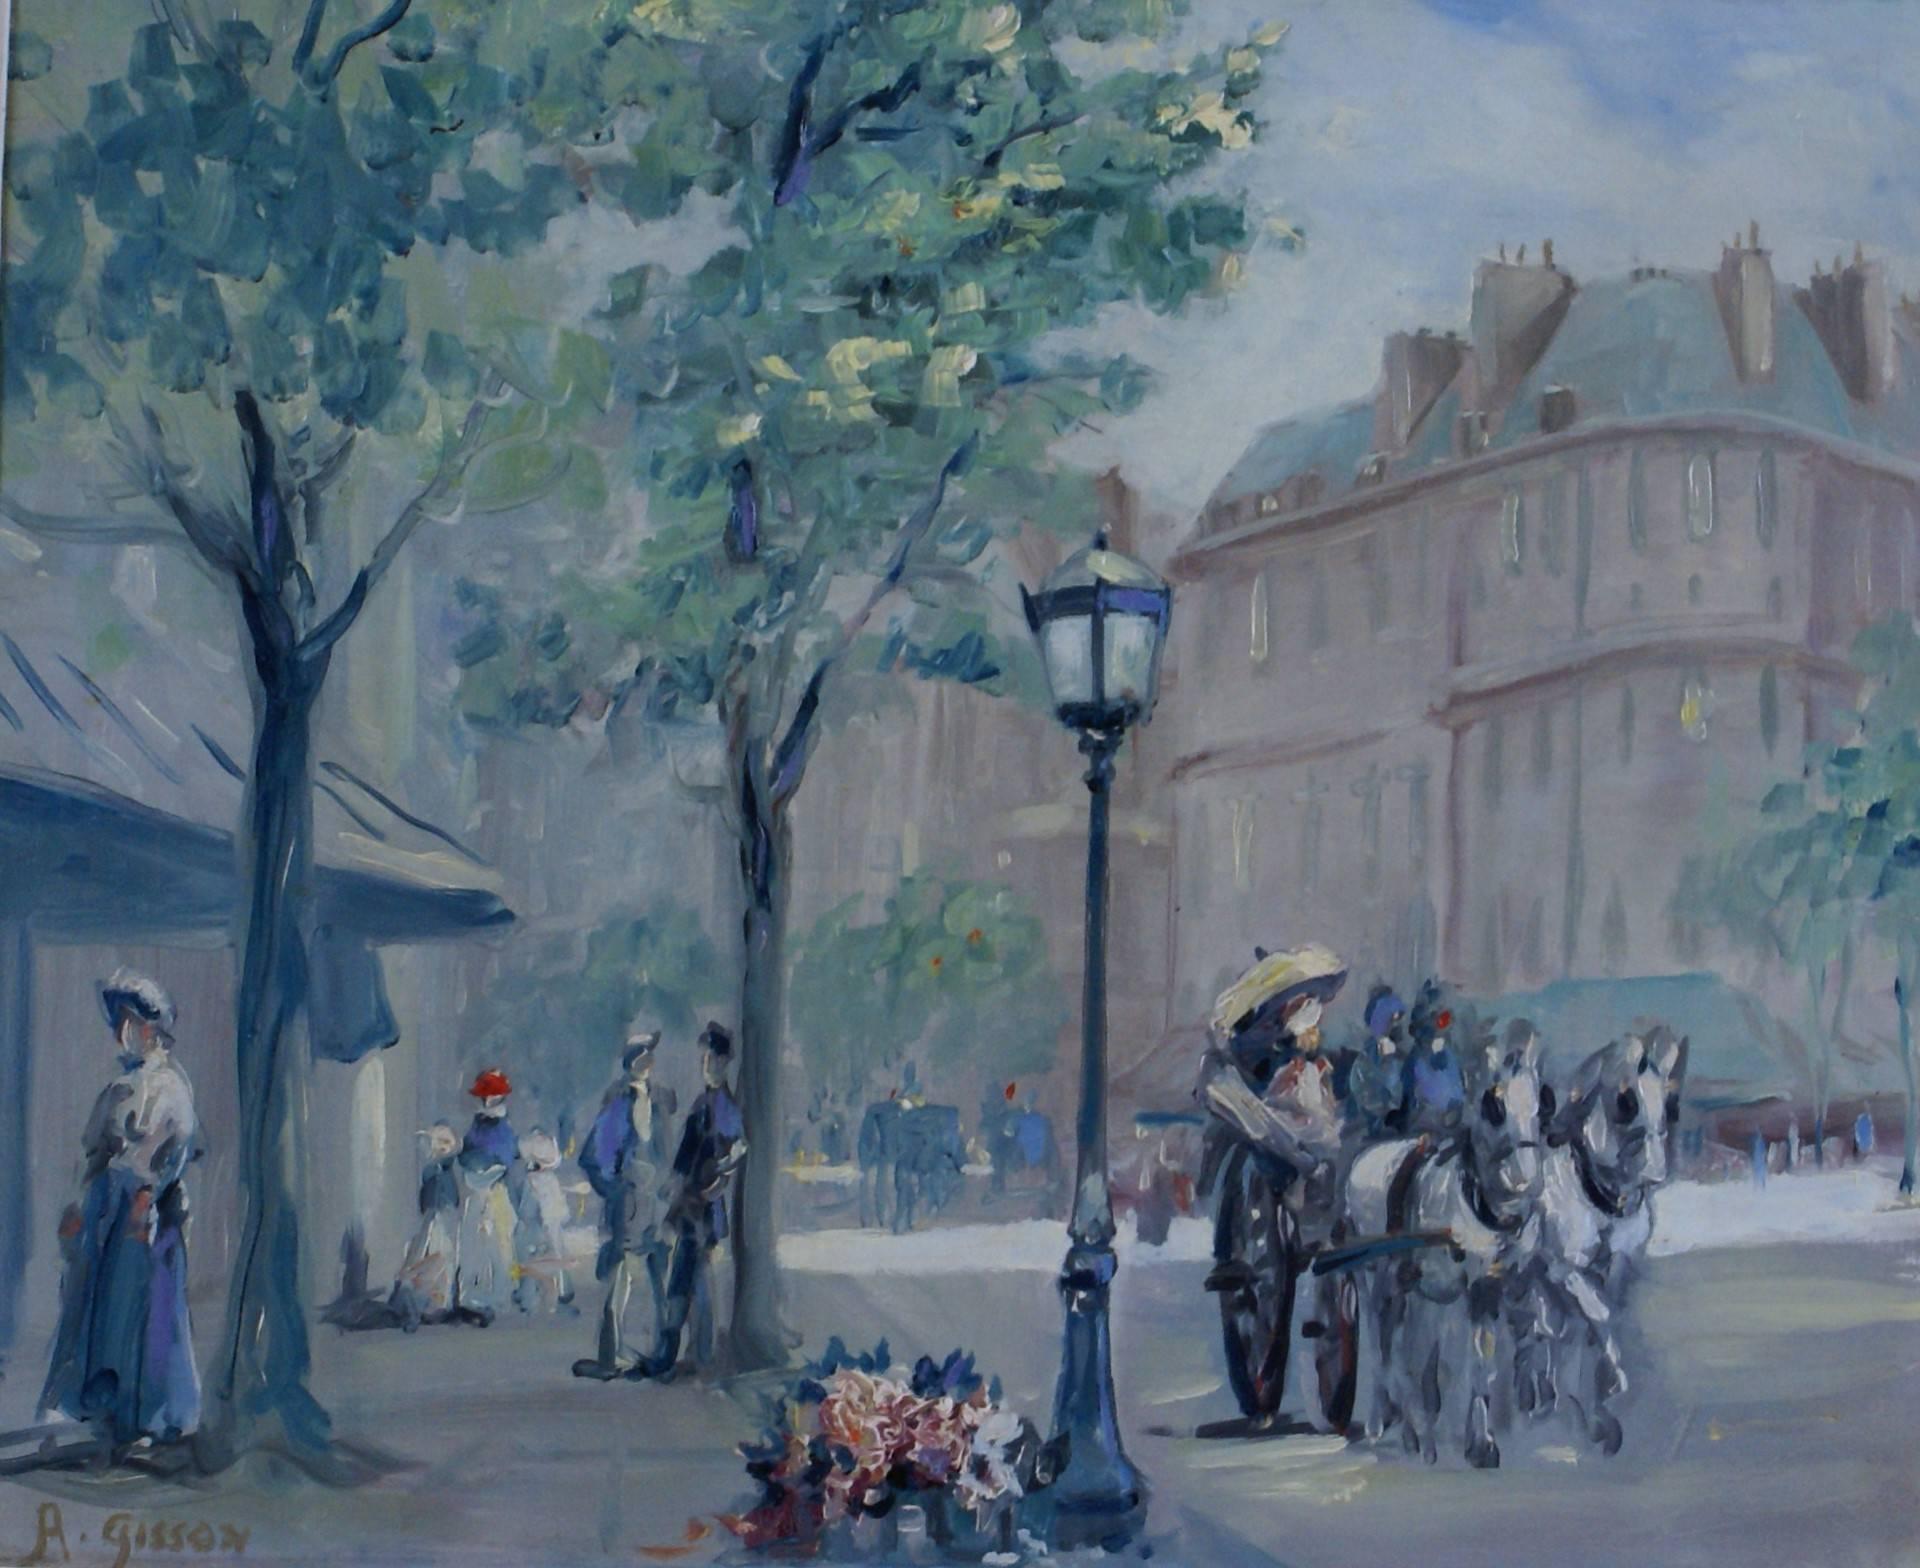 Le boulevard parisien - Painting de André Gisson